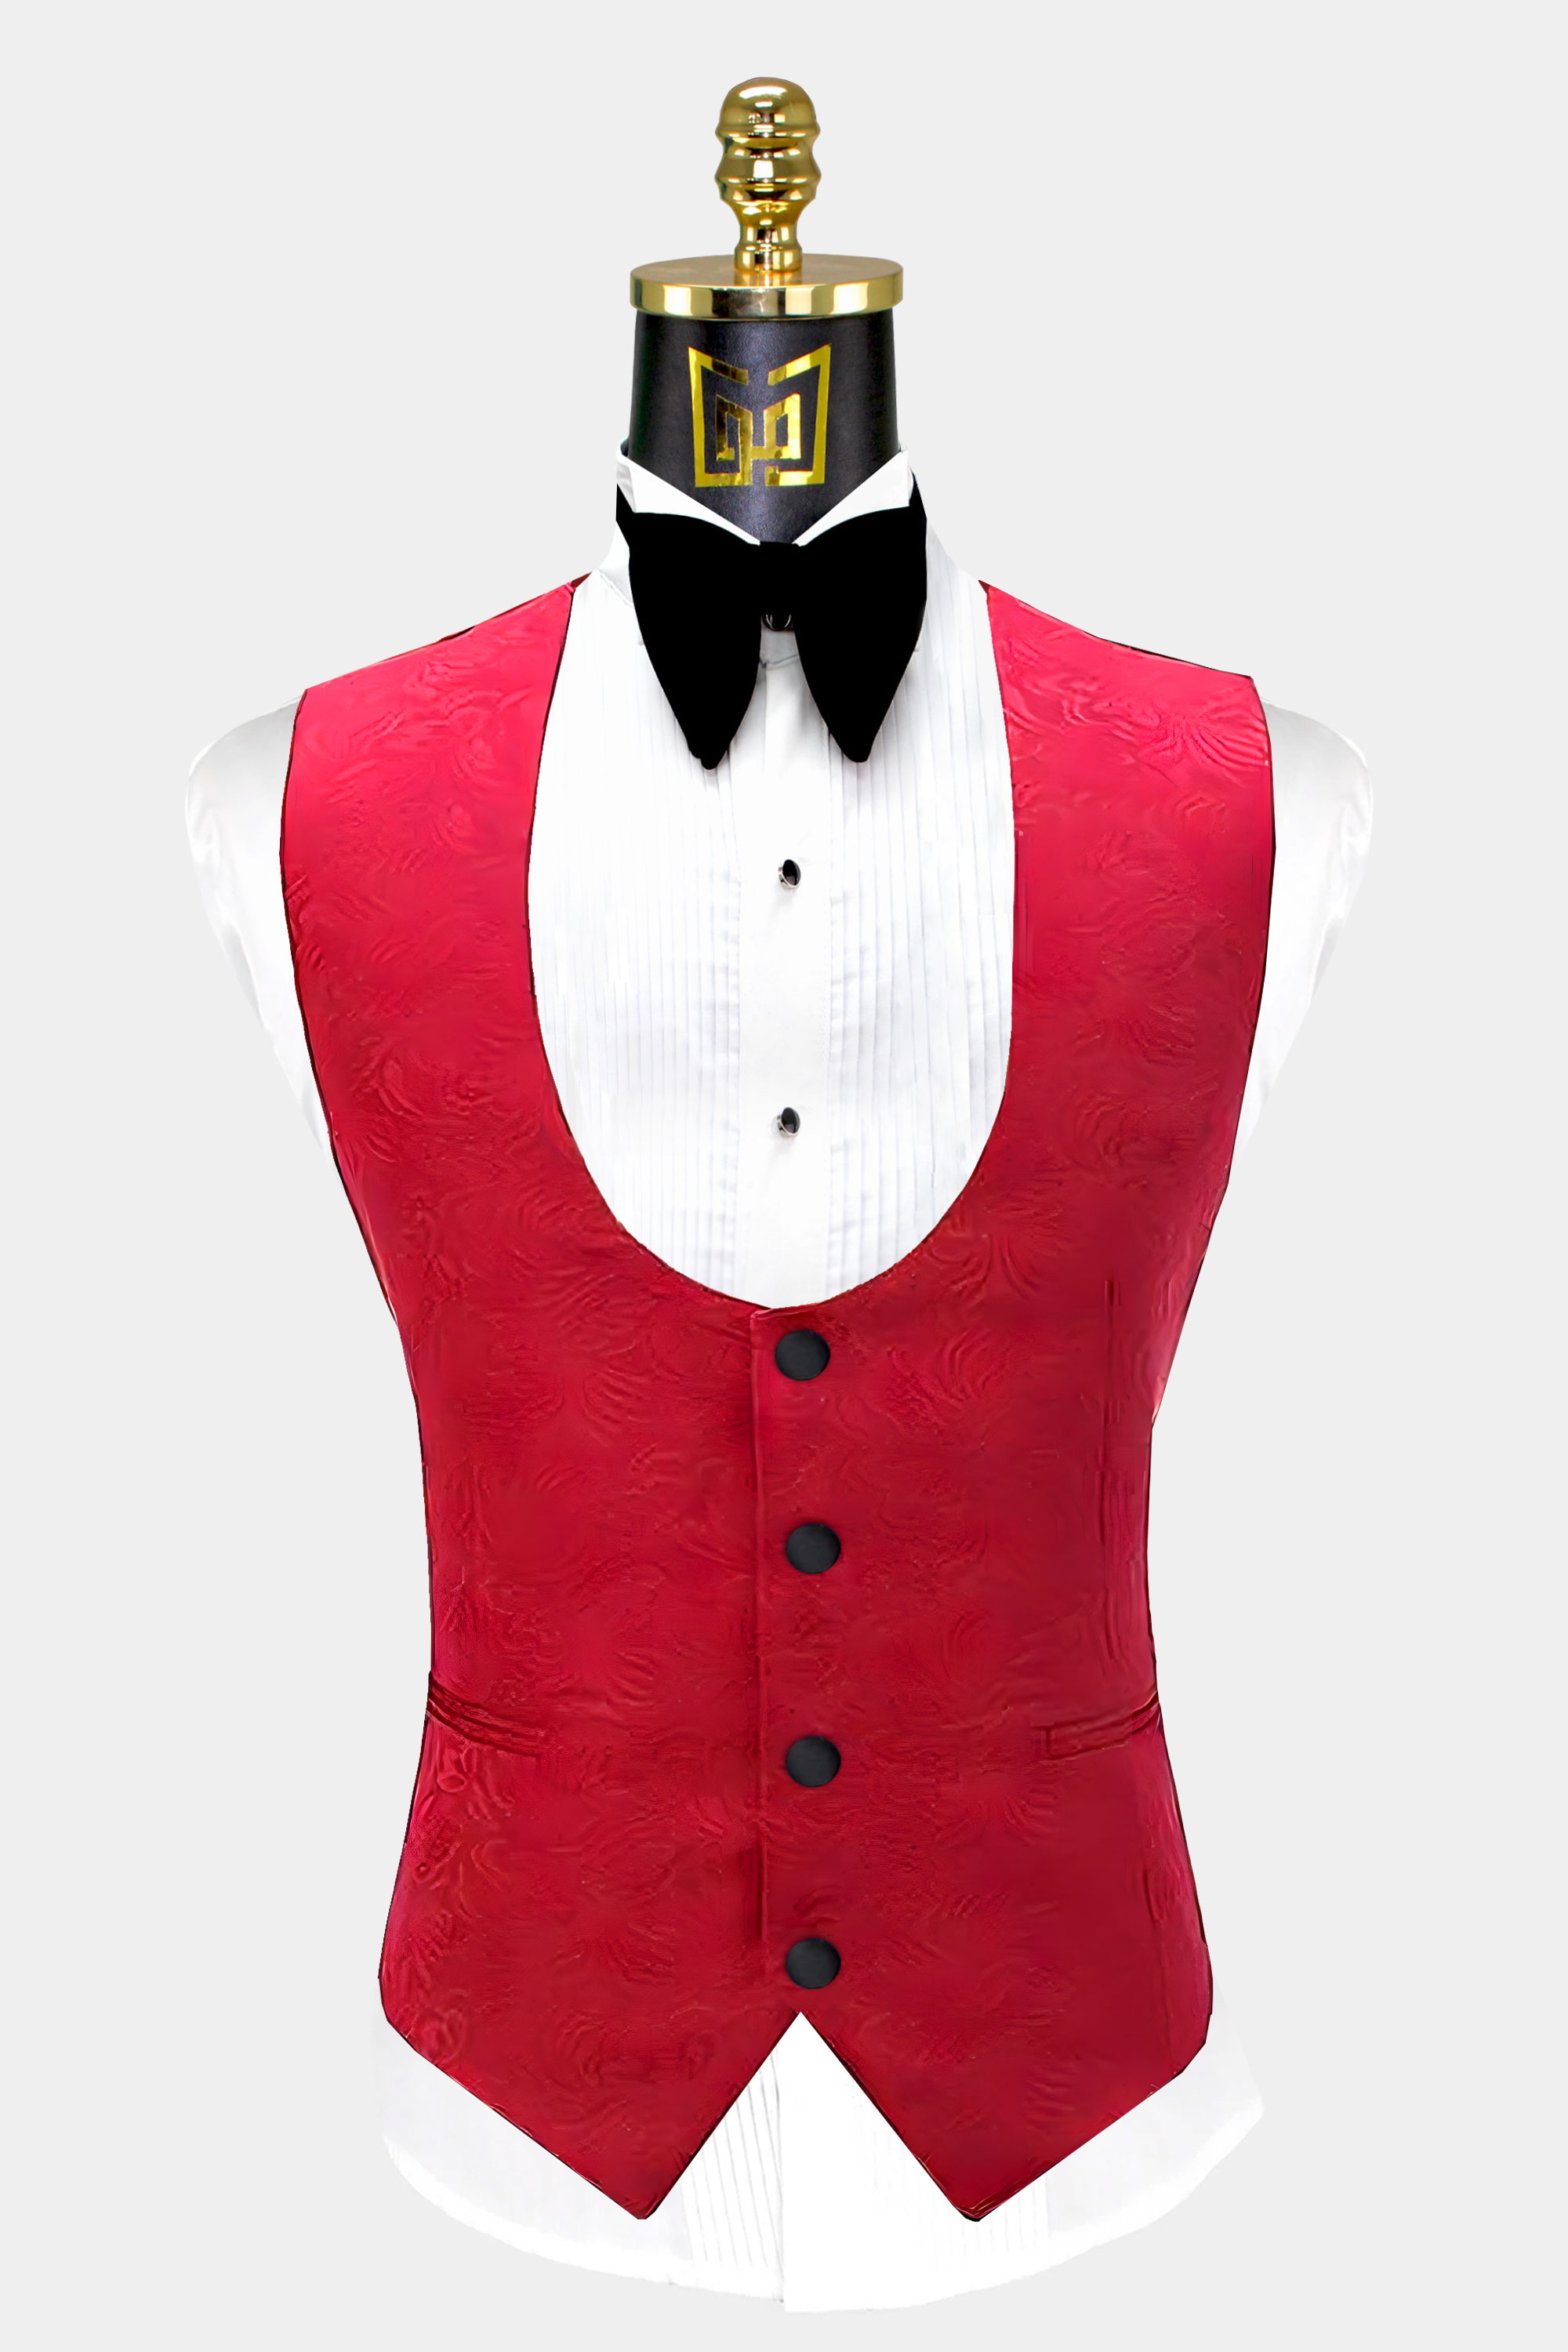 Red-and-Black-Tuxedo-Jacket-Wedding-Waistcoat-from-Gentlemansguru.com